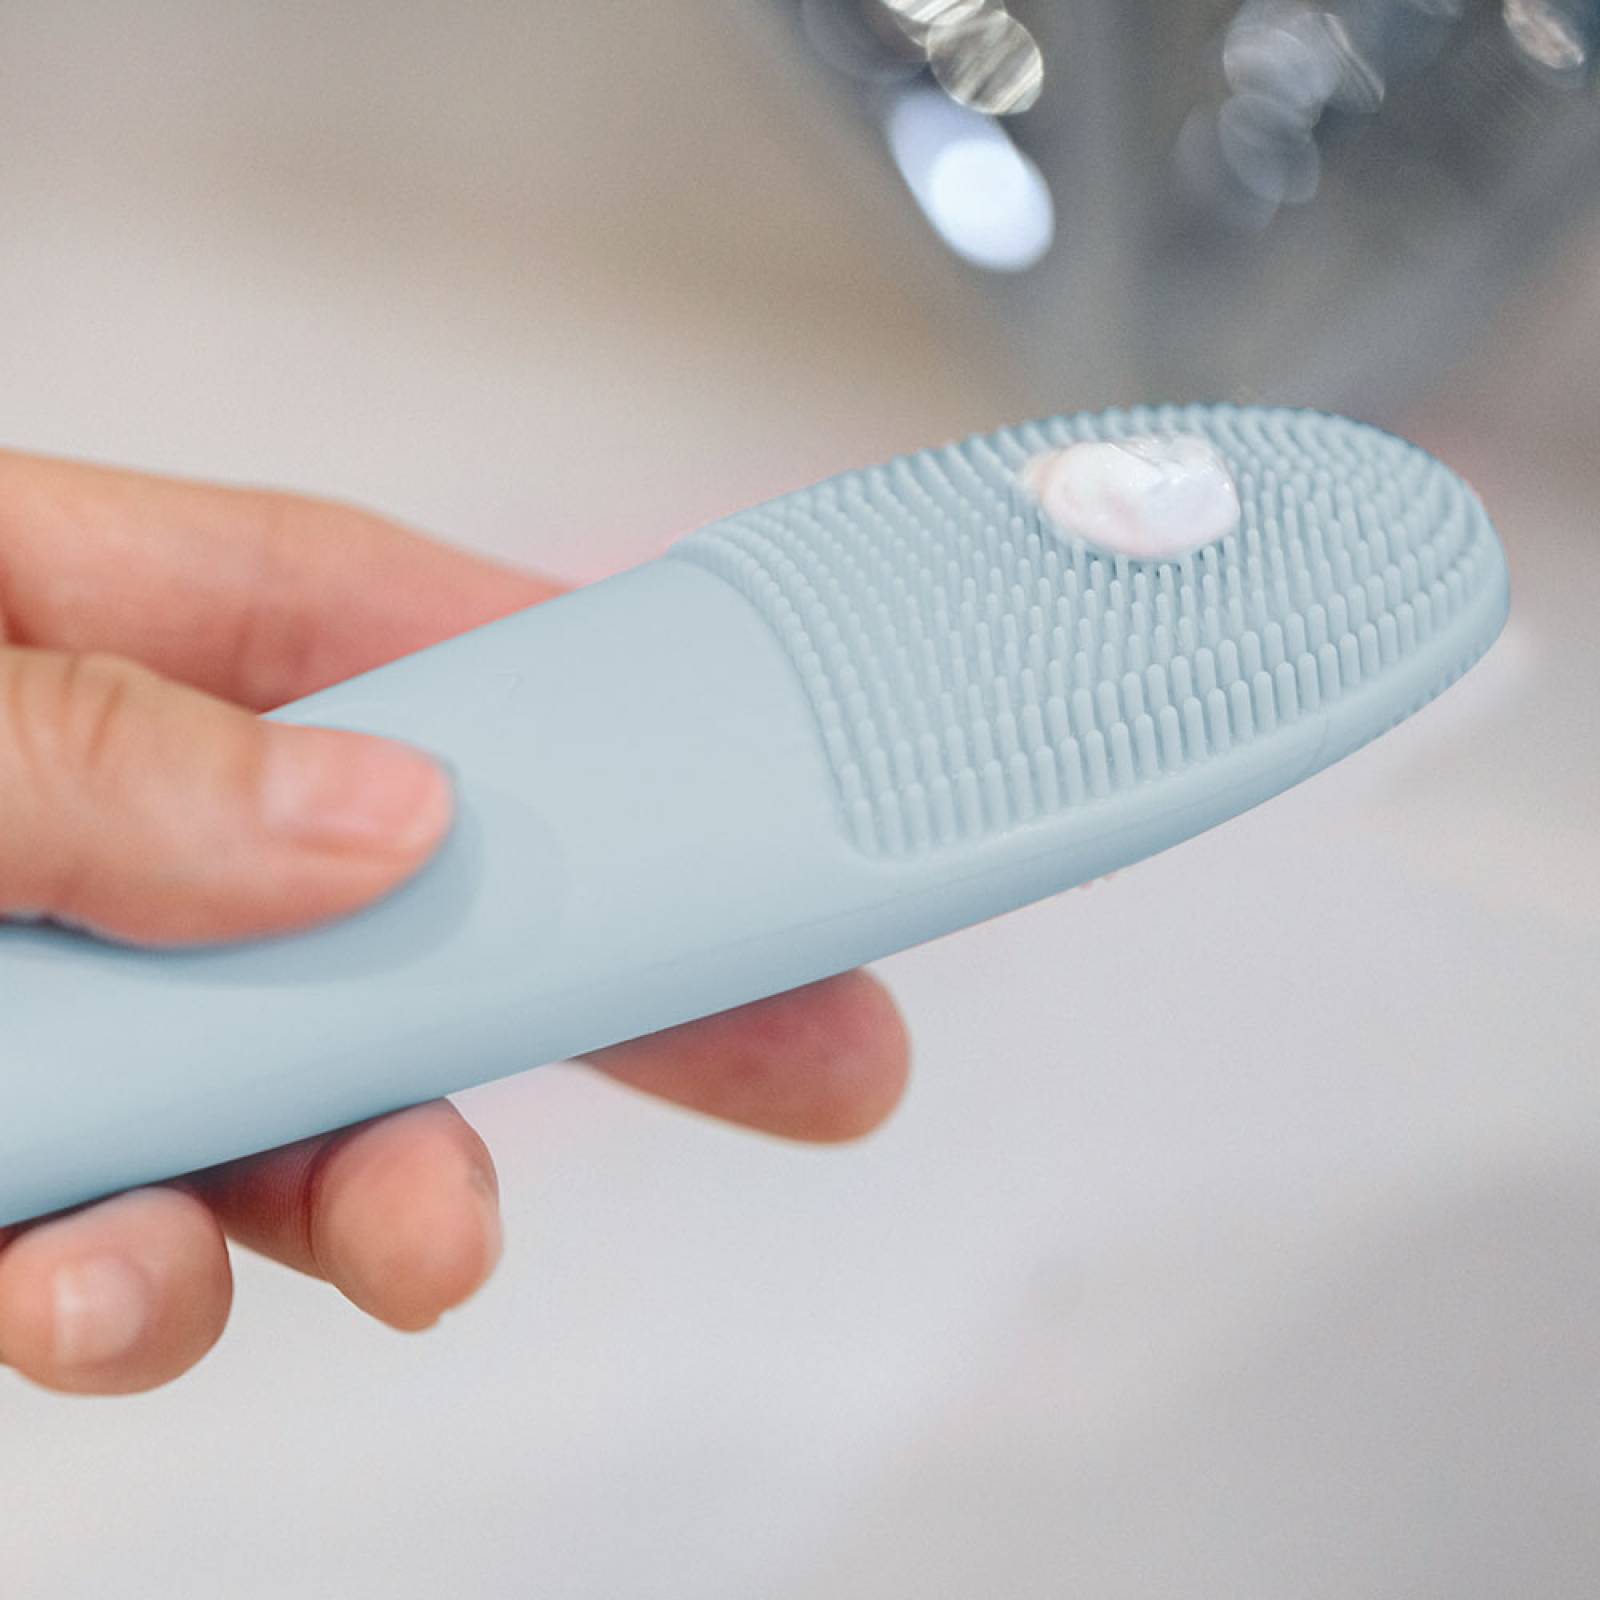 Miniso Cepillo Limpiador Facial Eléctrico Impermeable Protección IPX6 Azul